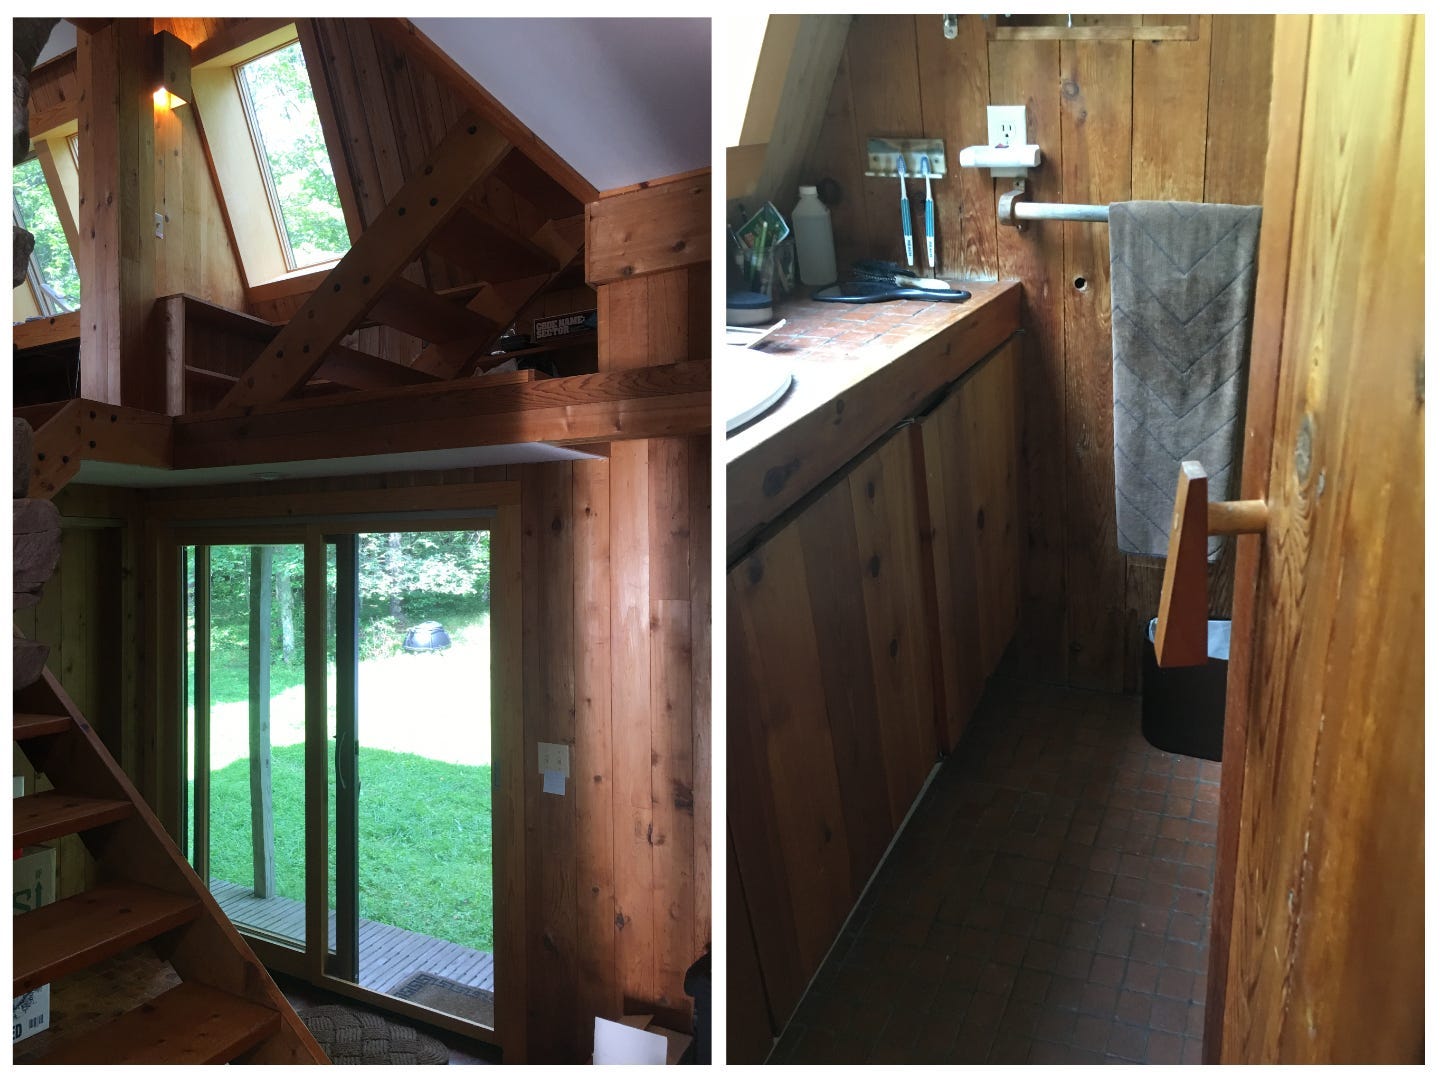 Links ein Bild der Kabine und der Oberlichter.  Links ein altes, schäbiges Badezimmer aus Holz.